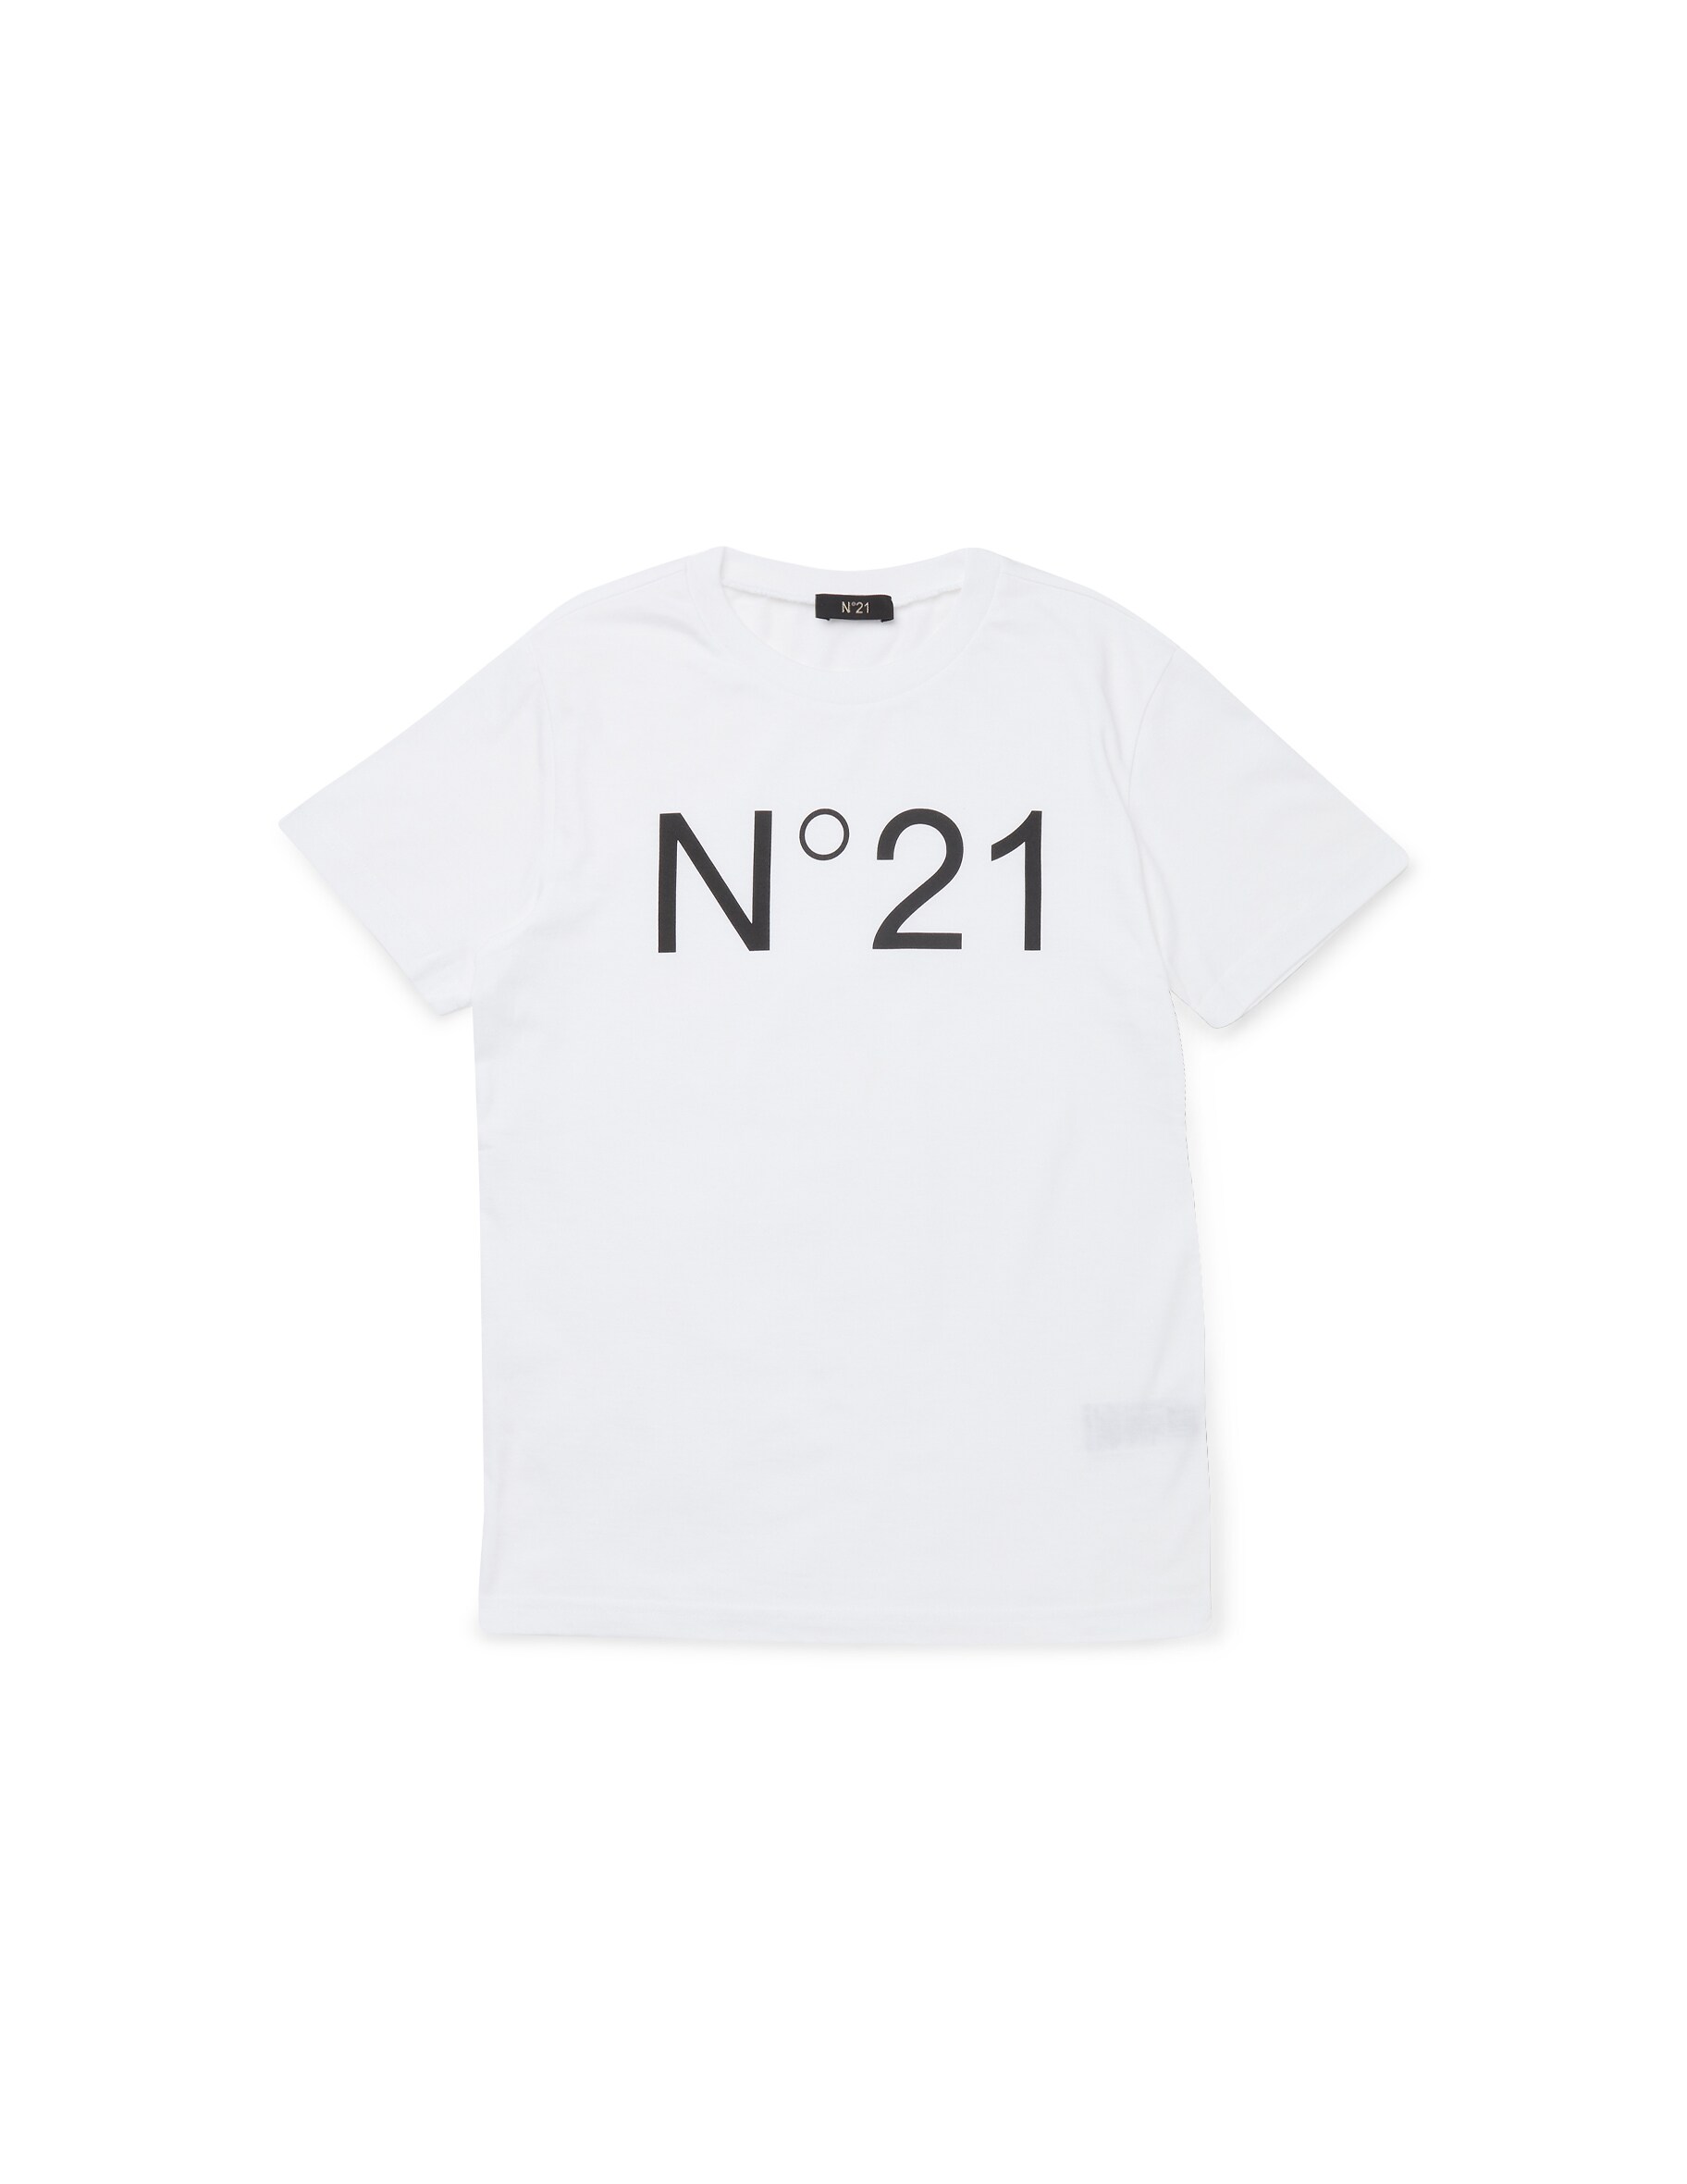 хлопковая футболка ennergiia 21 14002п э серый 110 Хлопковая футболка N°21, белый